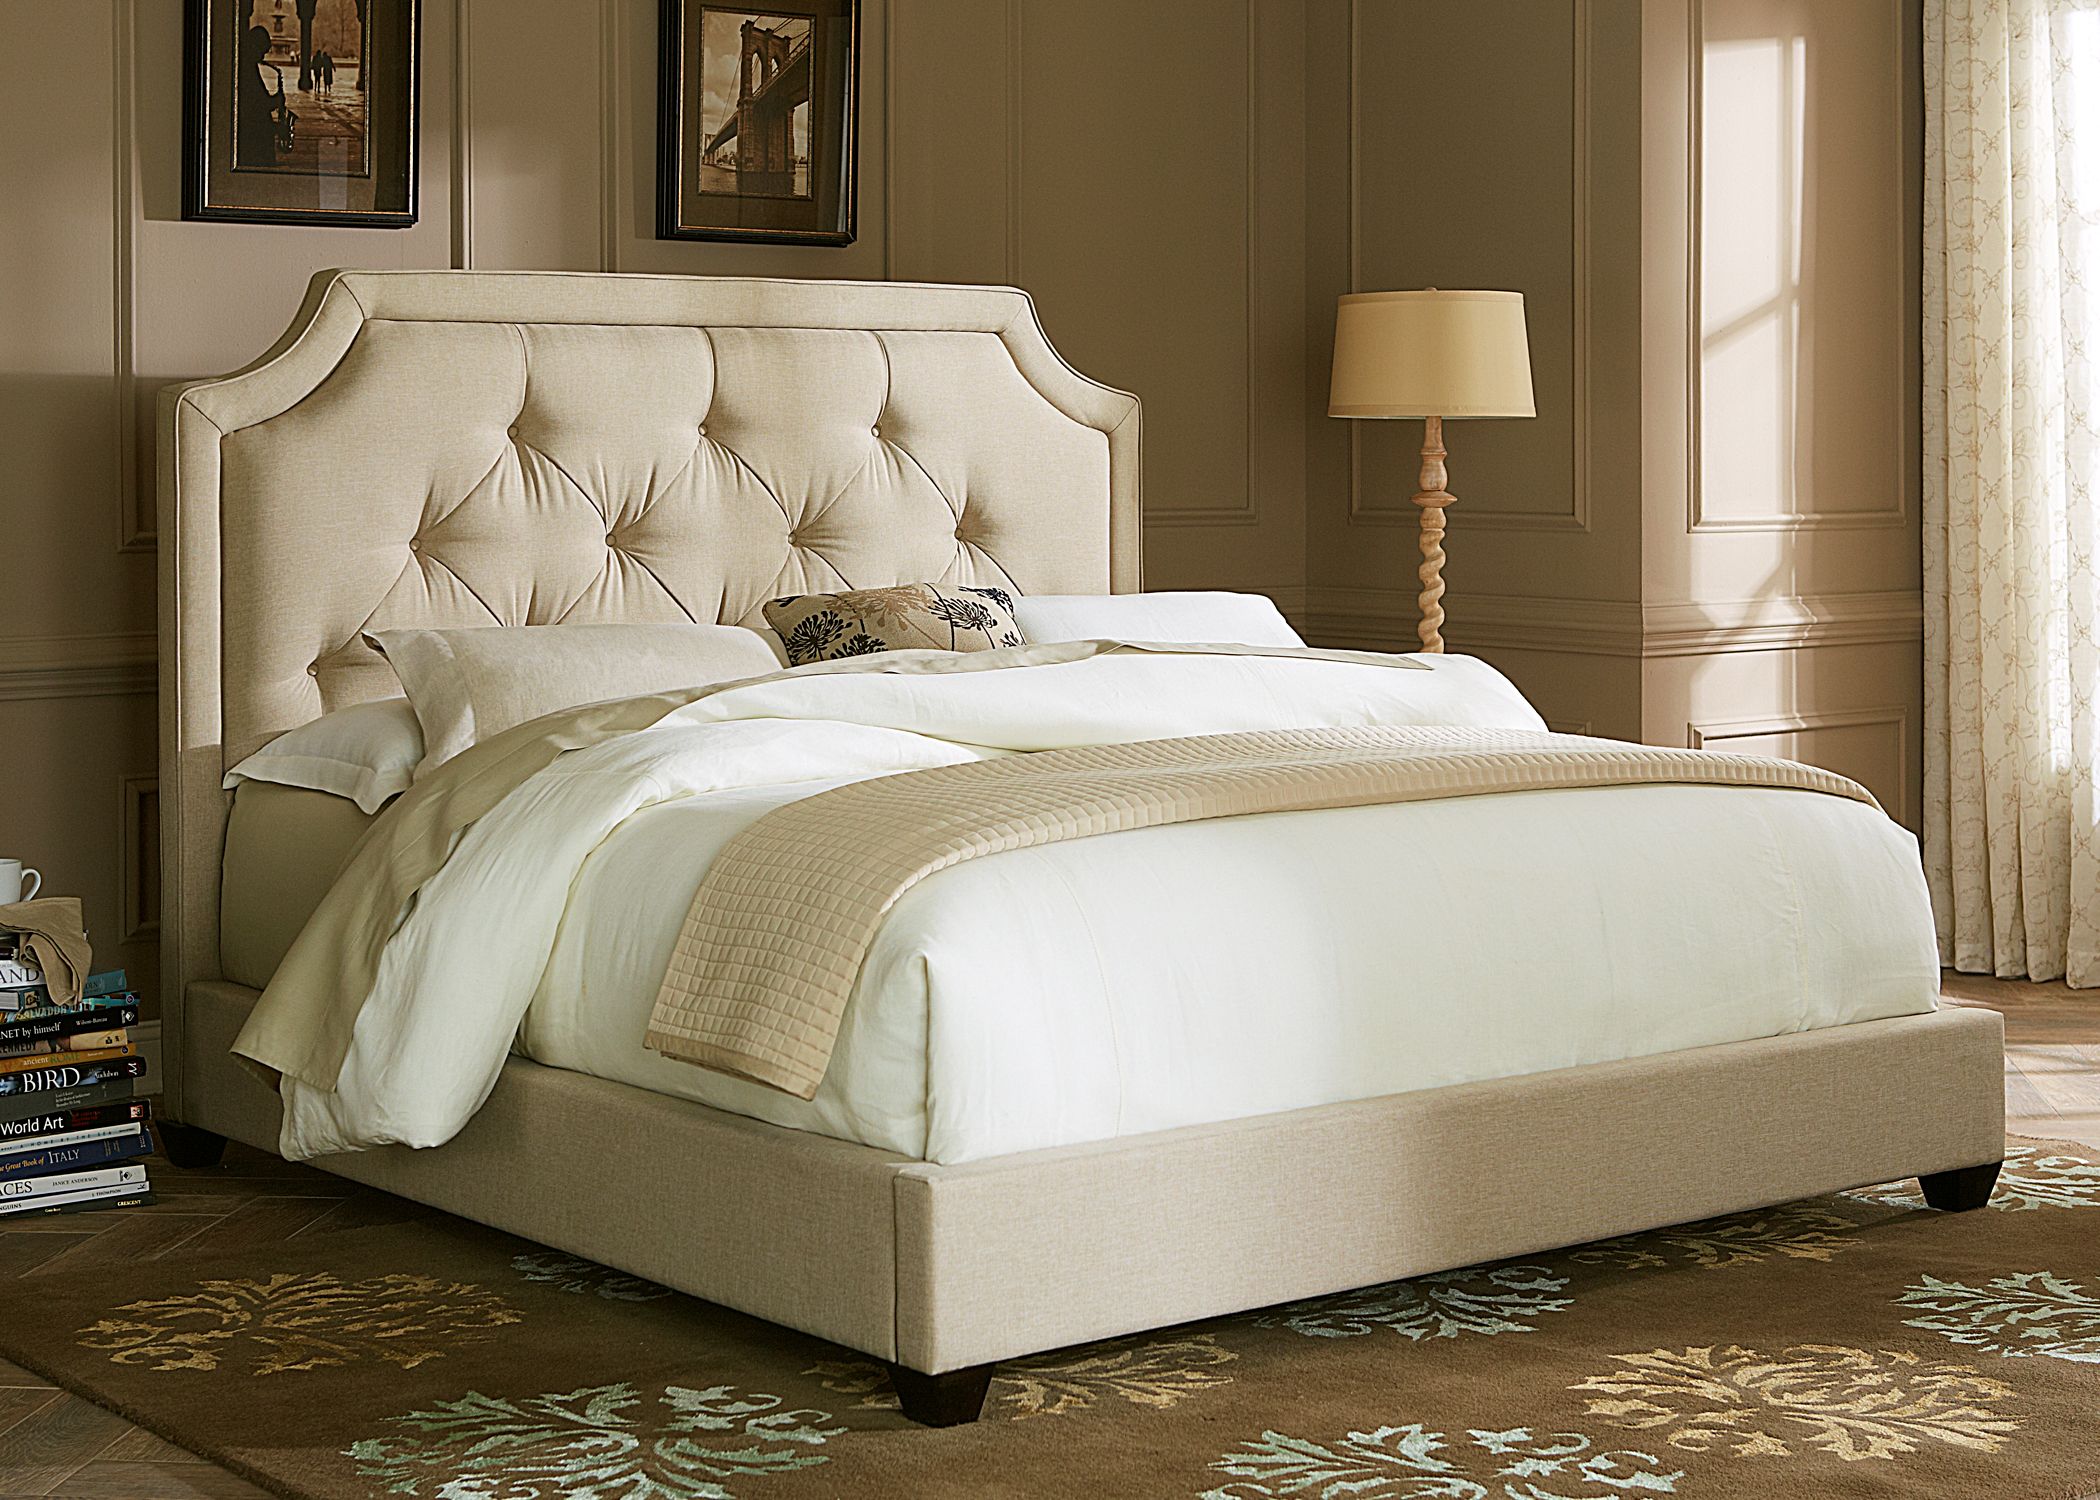 upholstered bed bedroom furniture